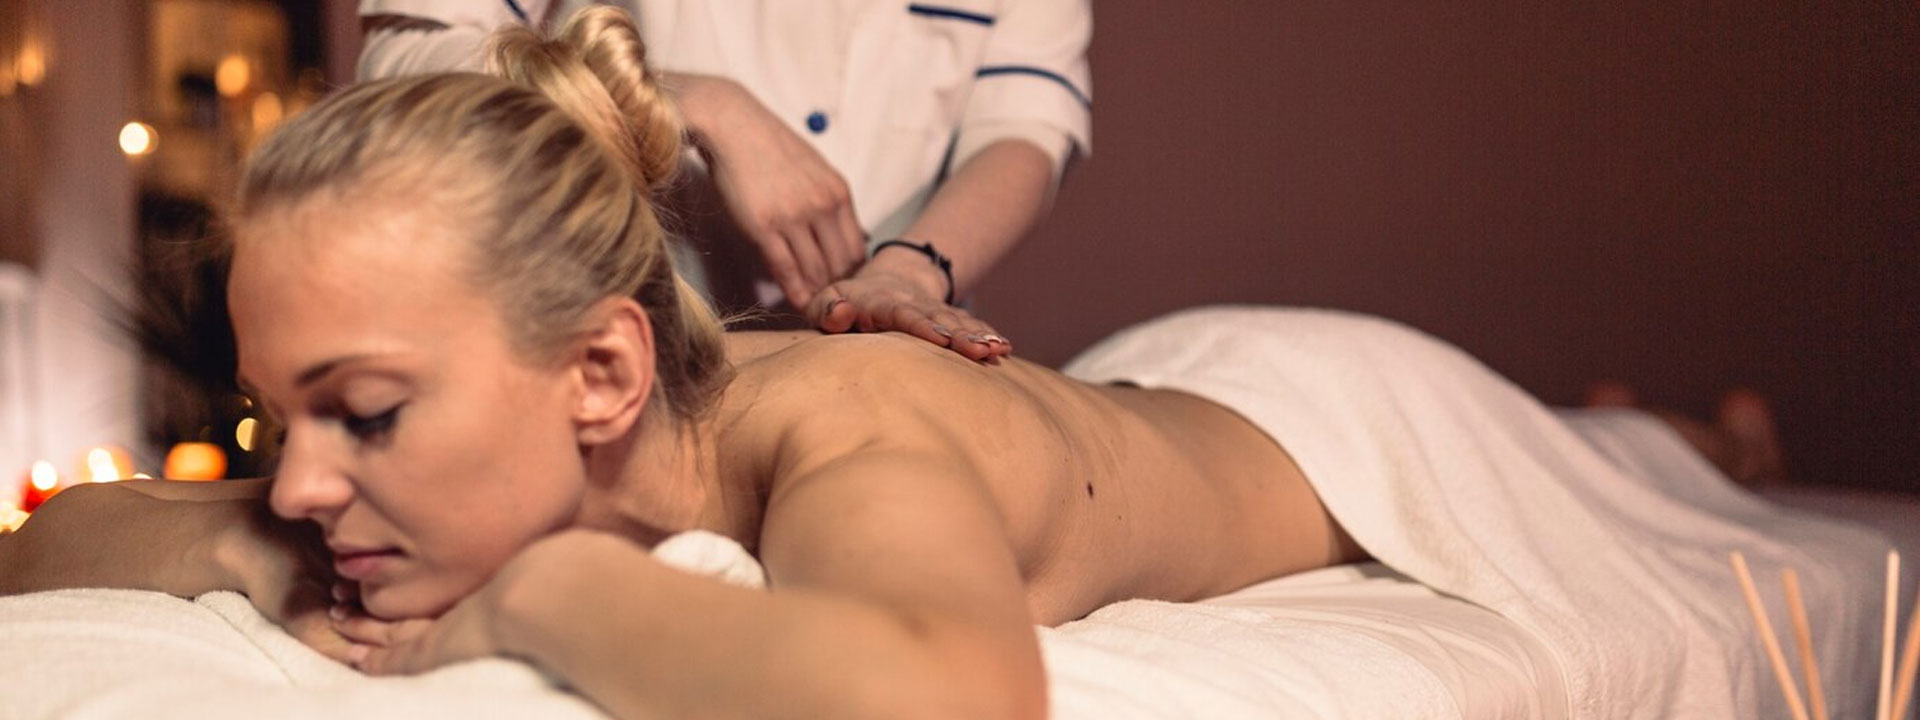 Mito 3 Los masajes eroticos son solo para placer sexual